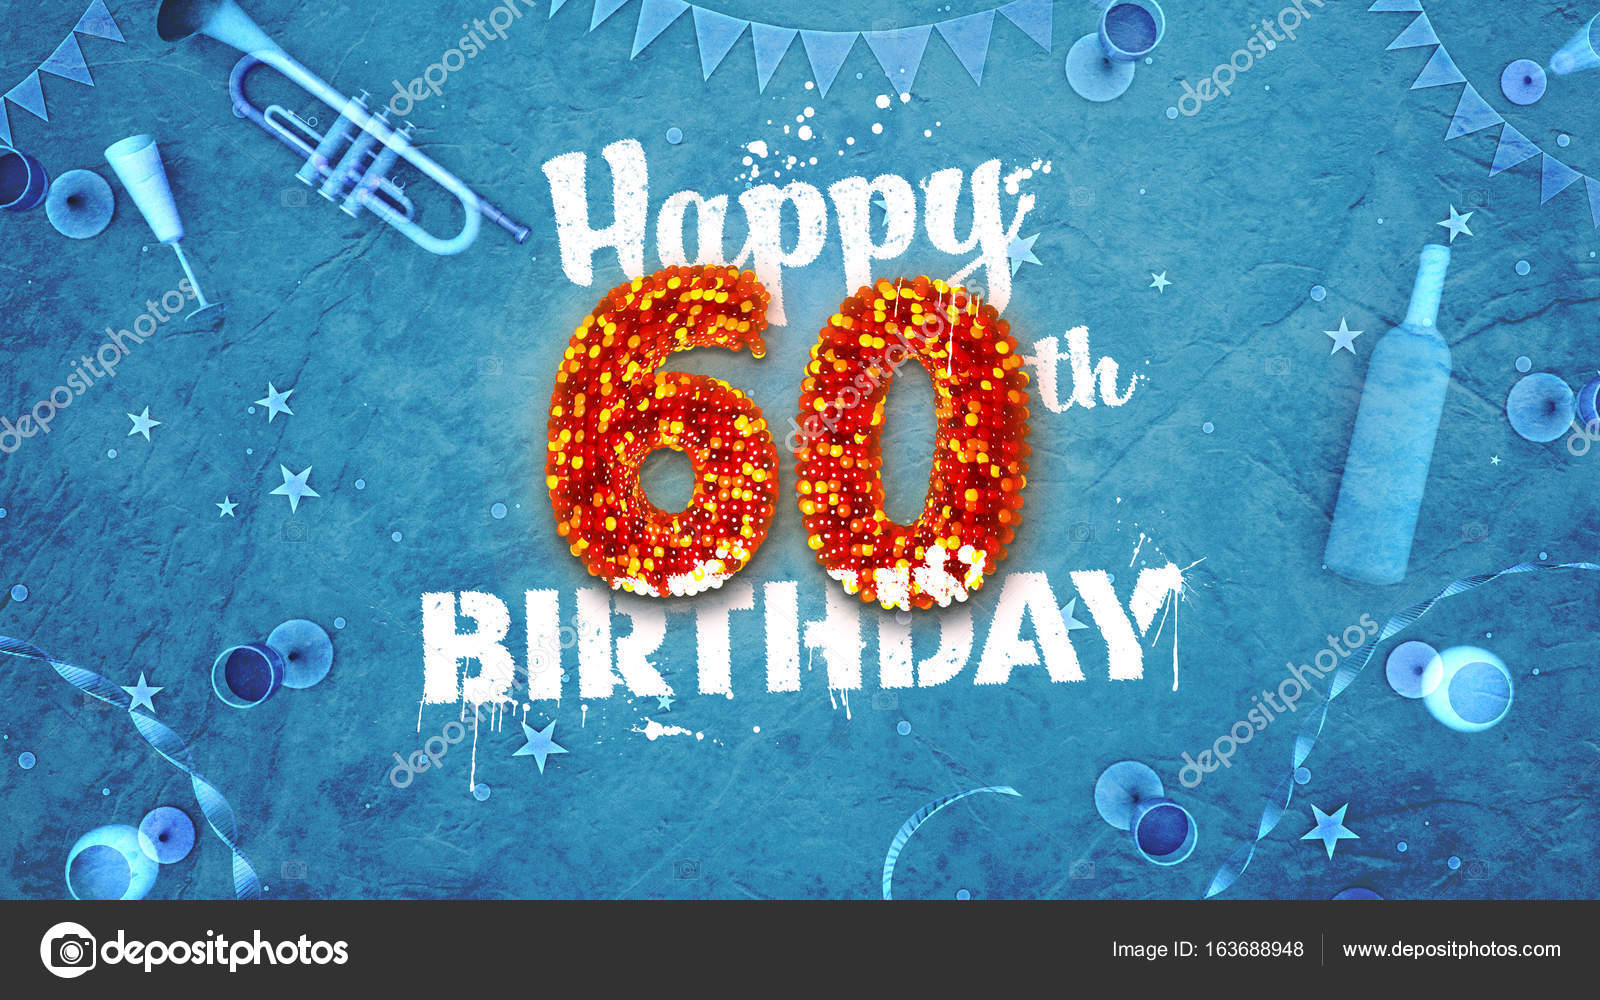 Với mẫu thẻ chúc mừng sinh nhật 60 tuổi đặc biệt, bạn sẽ có thể trao tặng những lời chúc tốt đẹp nhất đến người mà mình yêu quý. Cùng xem hình ảnh để lựa chọn dấu ấn riêng của mình trên chiếc thẻ sinh nhật tuyệt vời này.